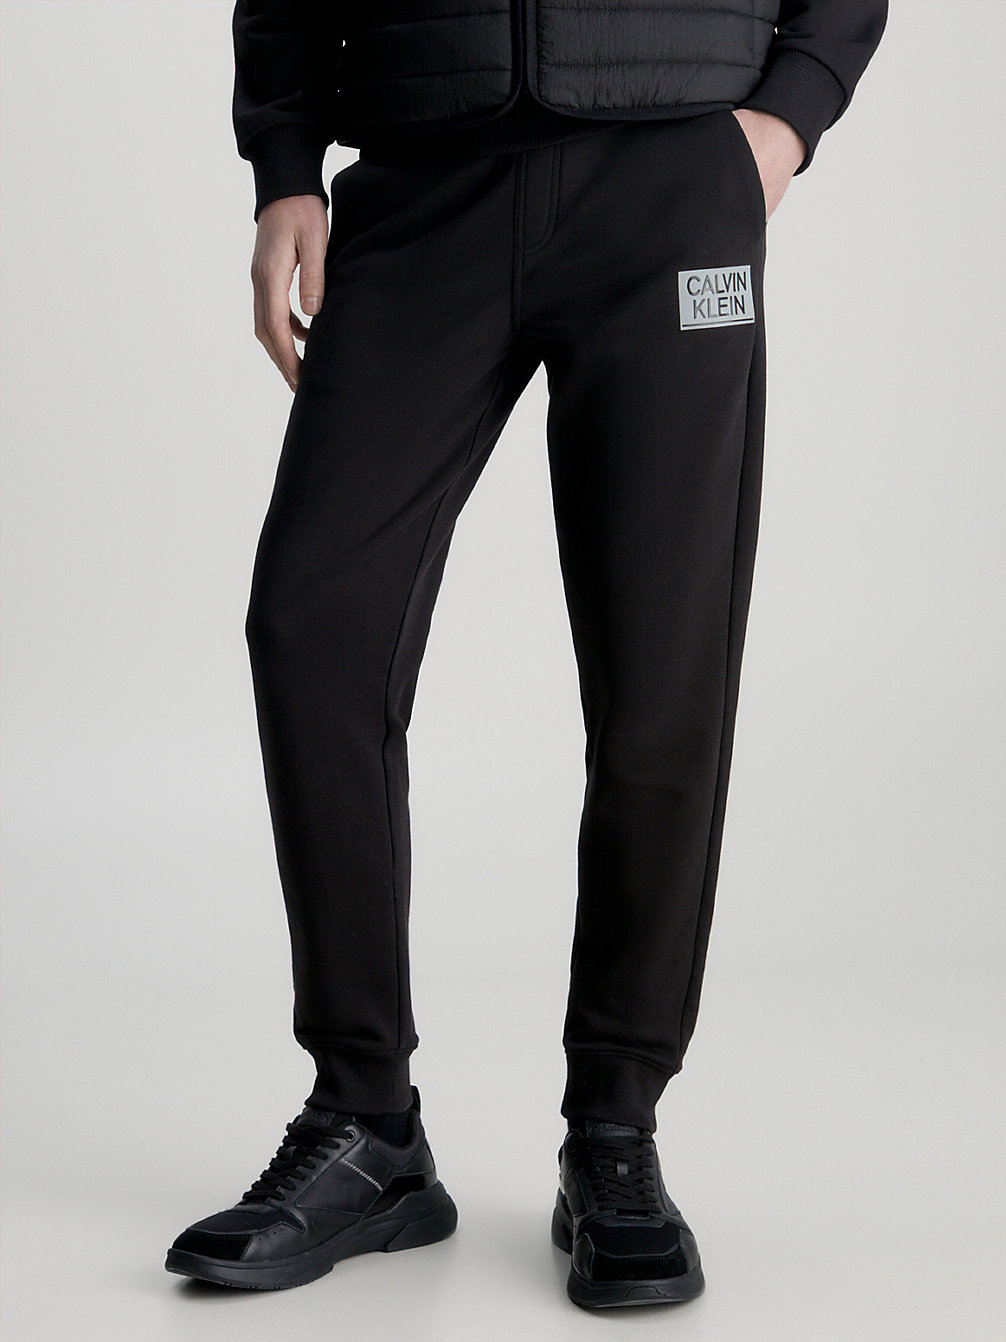 CK BLACK > Spodnie Dresowe Z Logo Z Bawełny Organicznej > undefined Mężczyźni - Calvin Klein